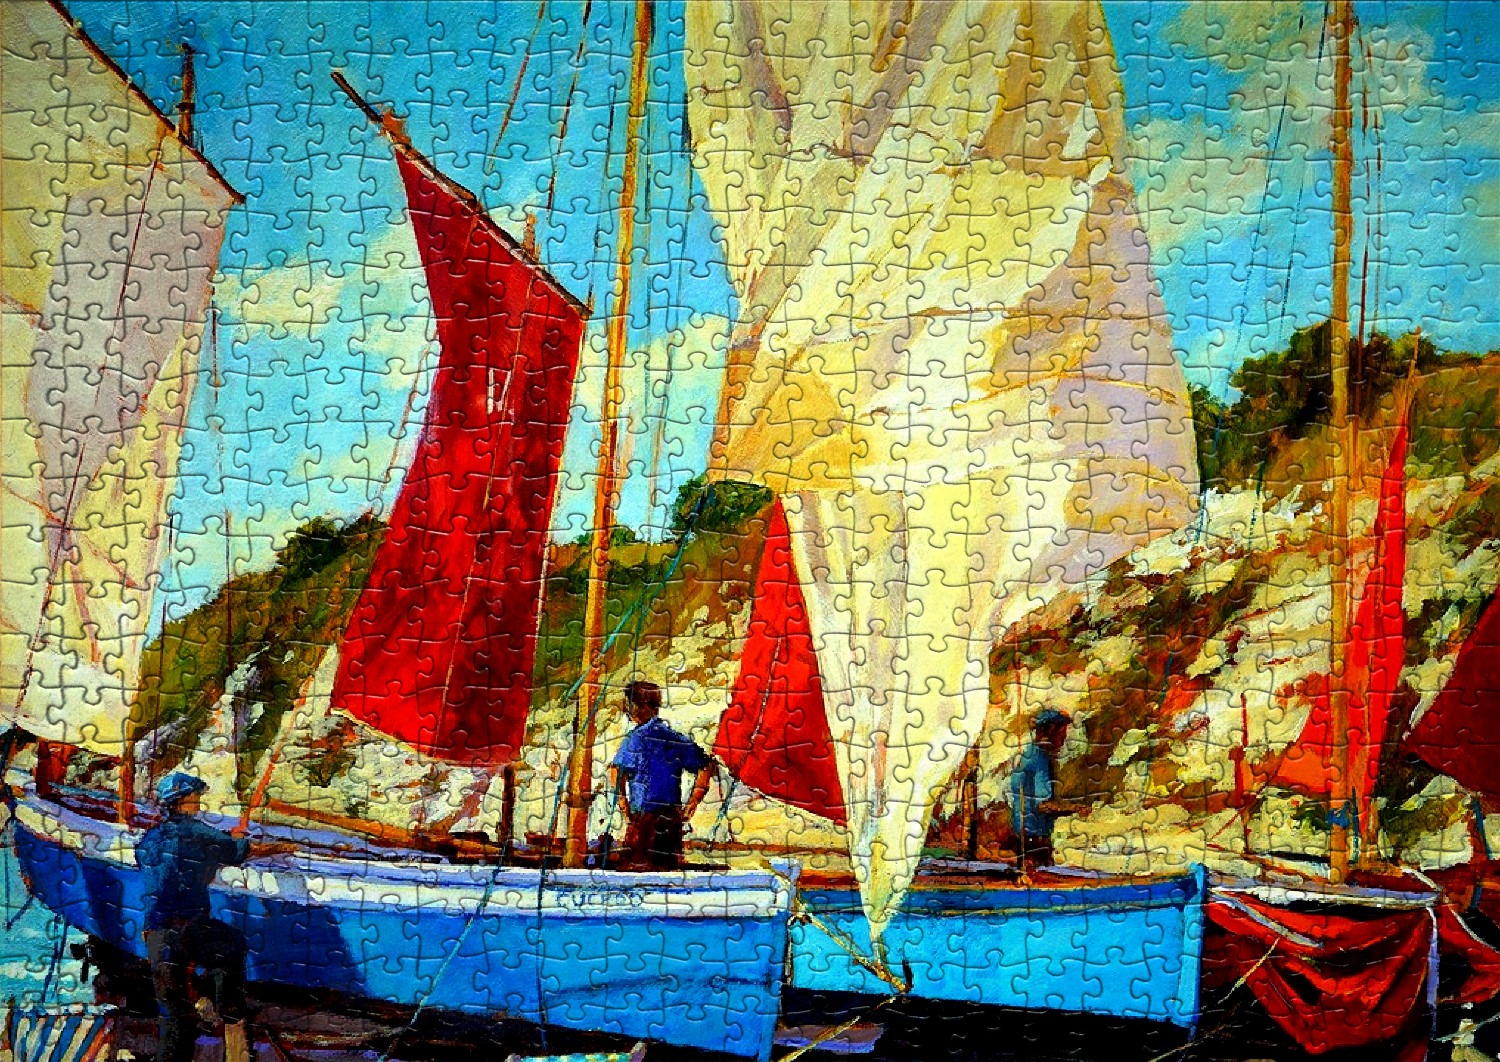 Ports et bateaux - Liste de 42 puzzles